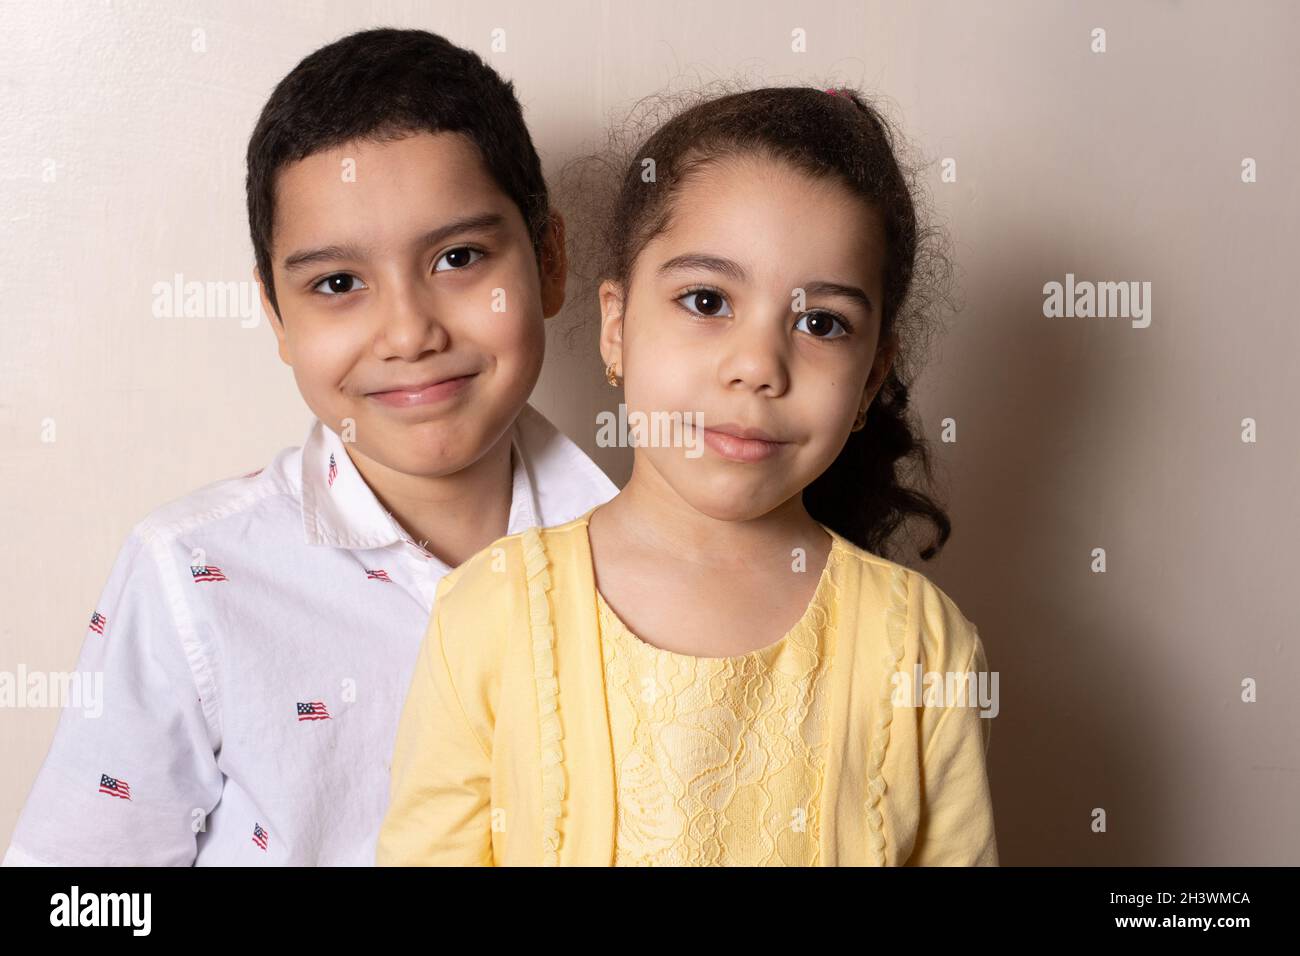 Portrat de 4 años de edad en casa con su hermano de 9 años Foto de stock